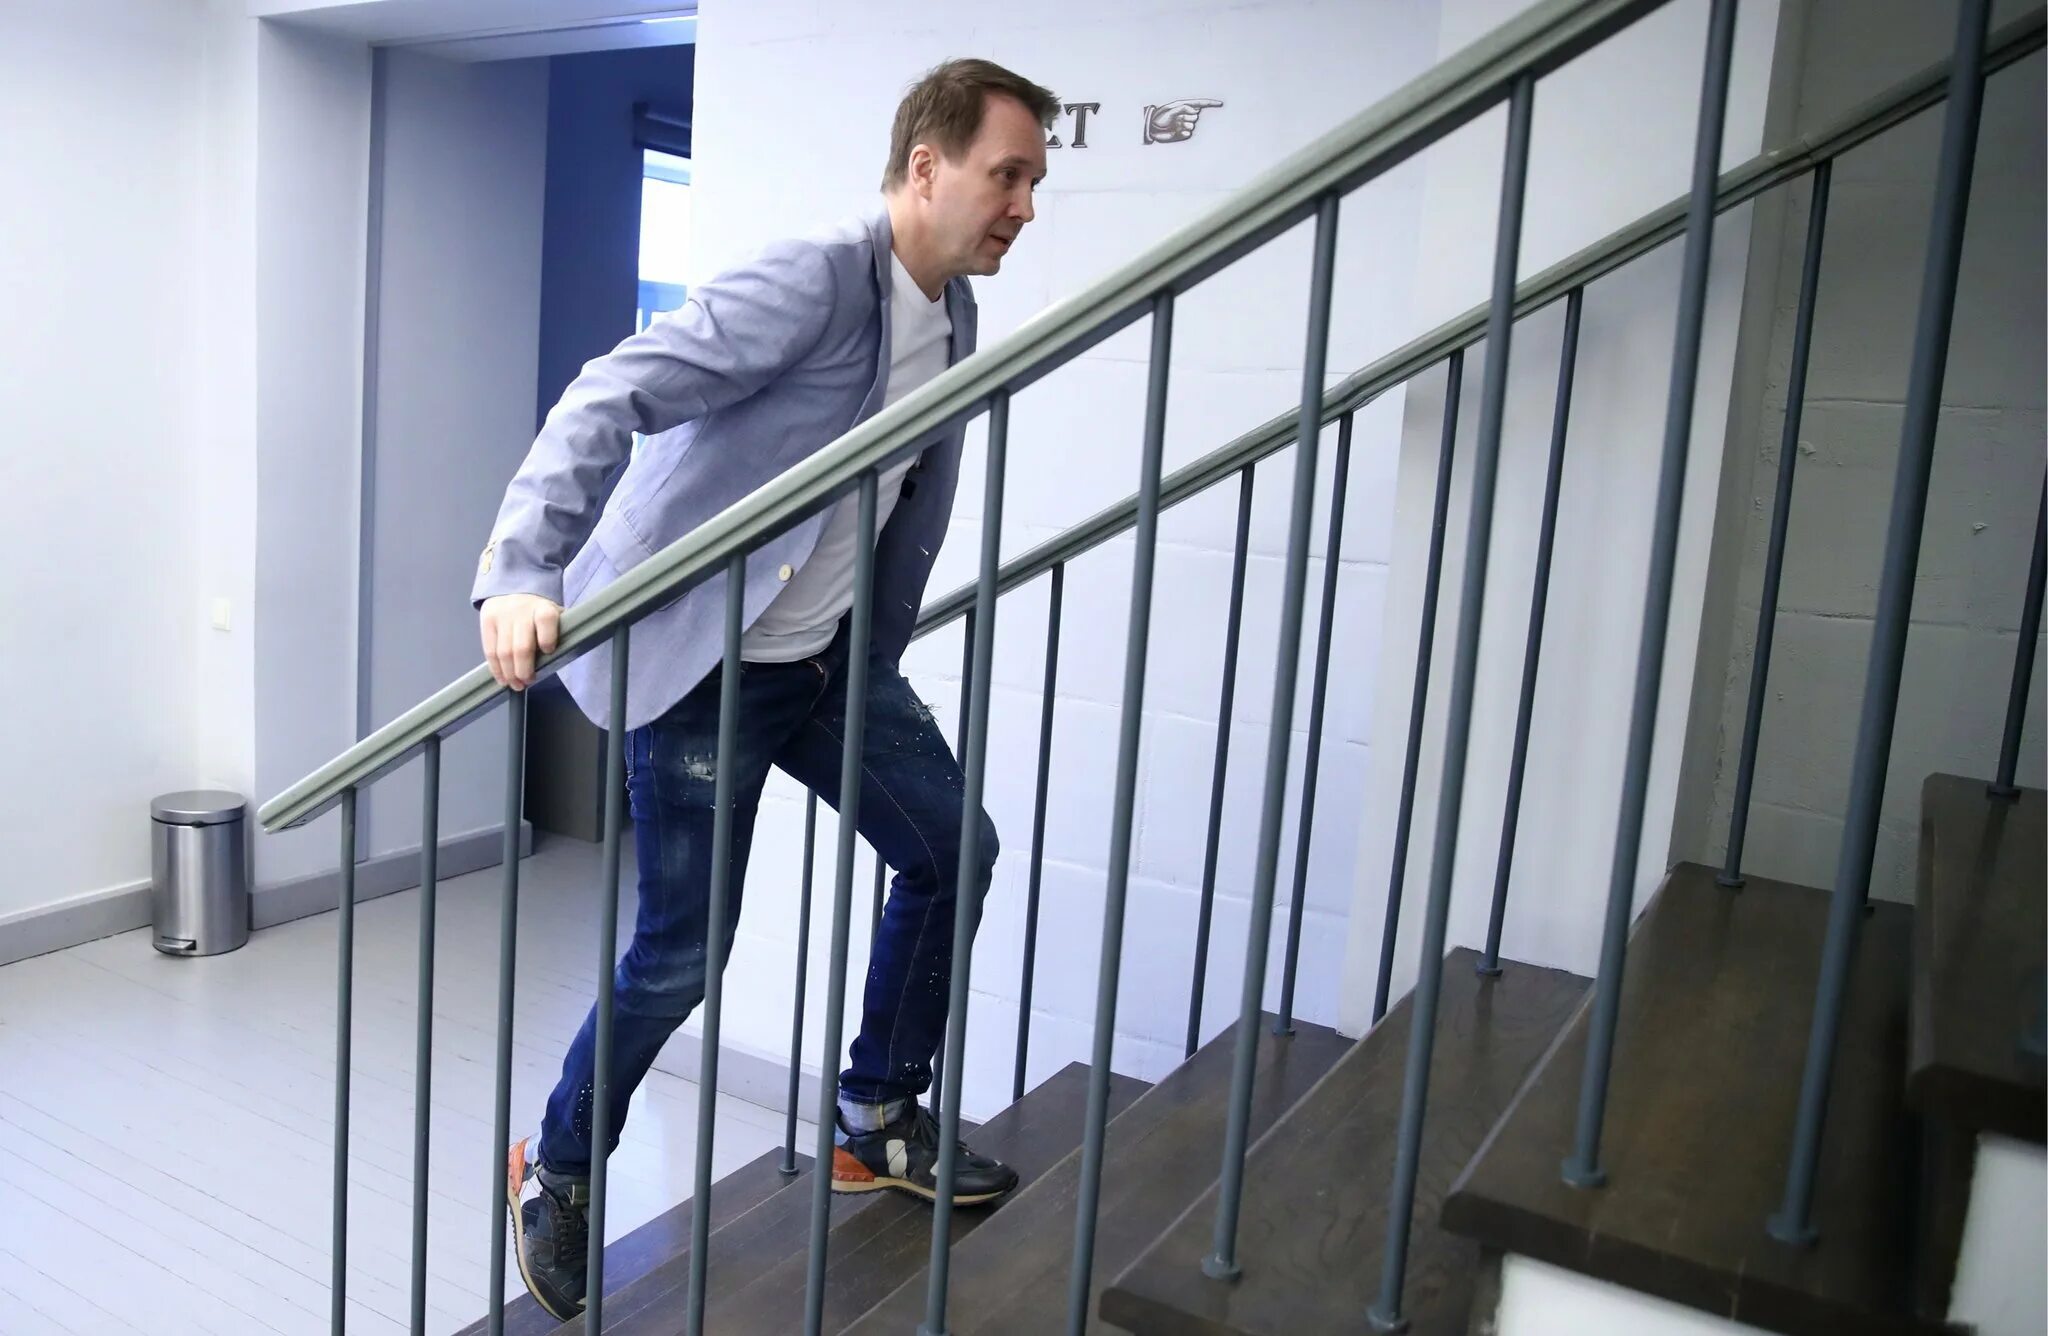 Остановился лестница. Человек на лестнице. Подъем по лестнице. Подъем по ступенькам. Человек поднимается по лестнице.